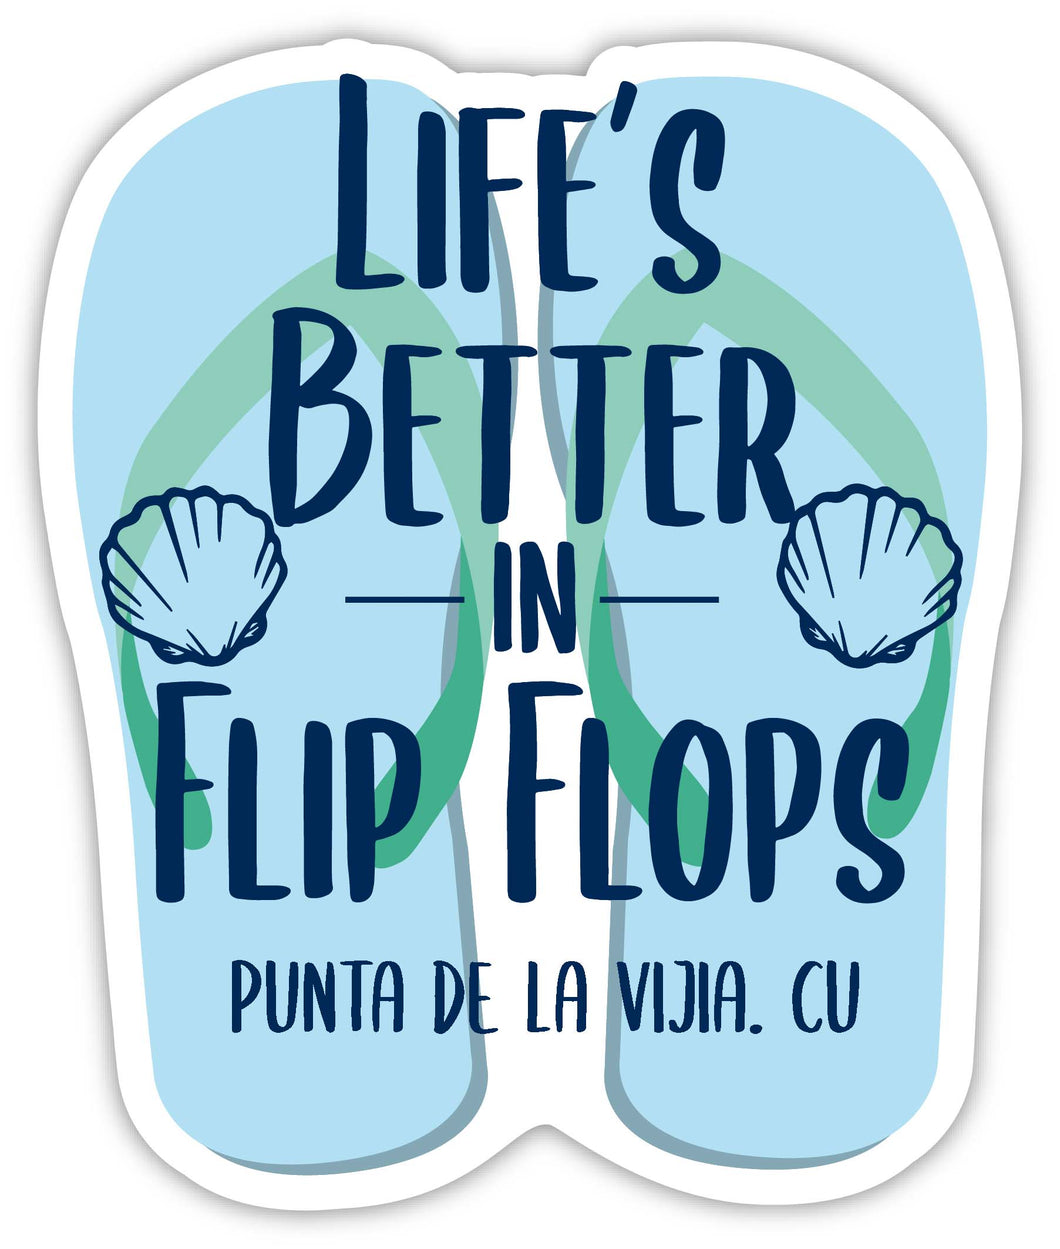 Punta De La Vijia Cuba Souvenir 4 Inch Vinyl Decal Sticker Flip Flop Design